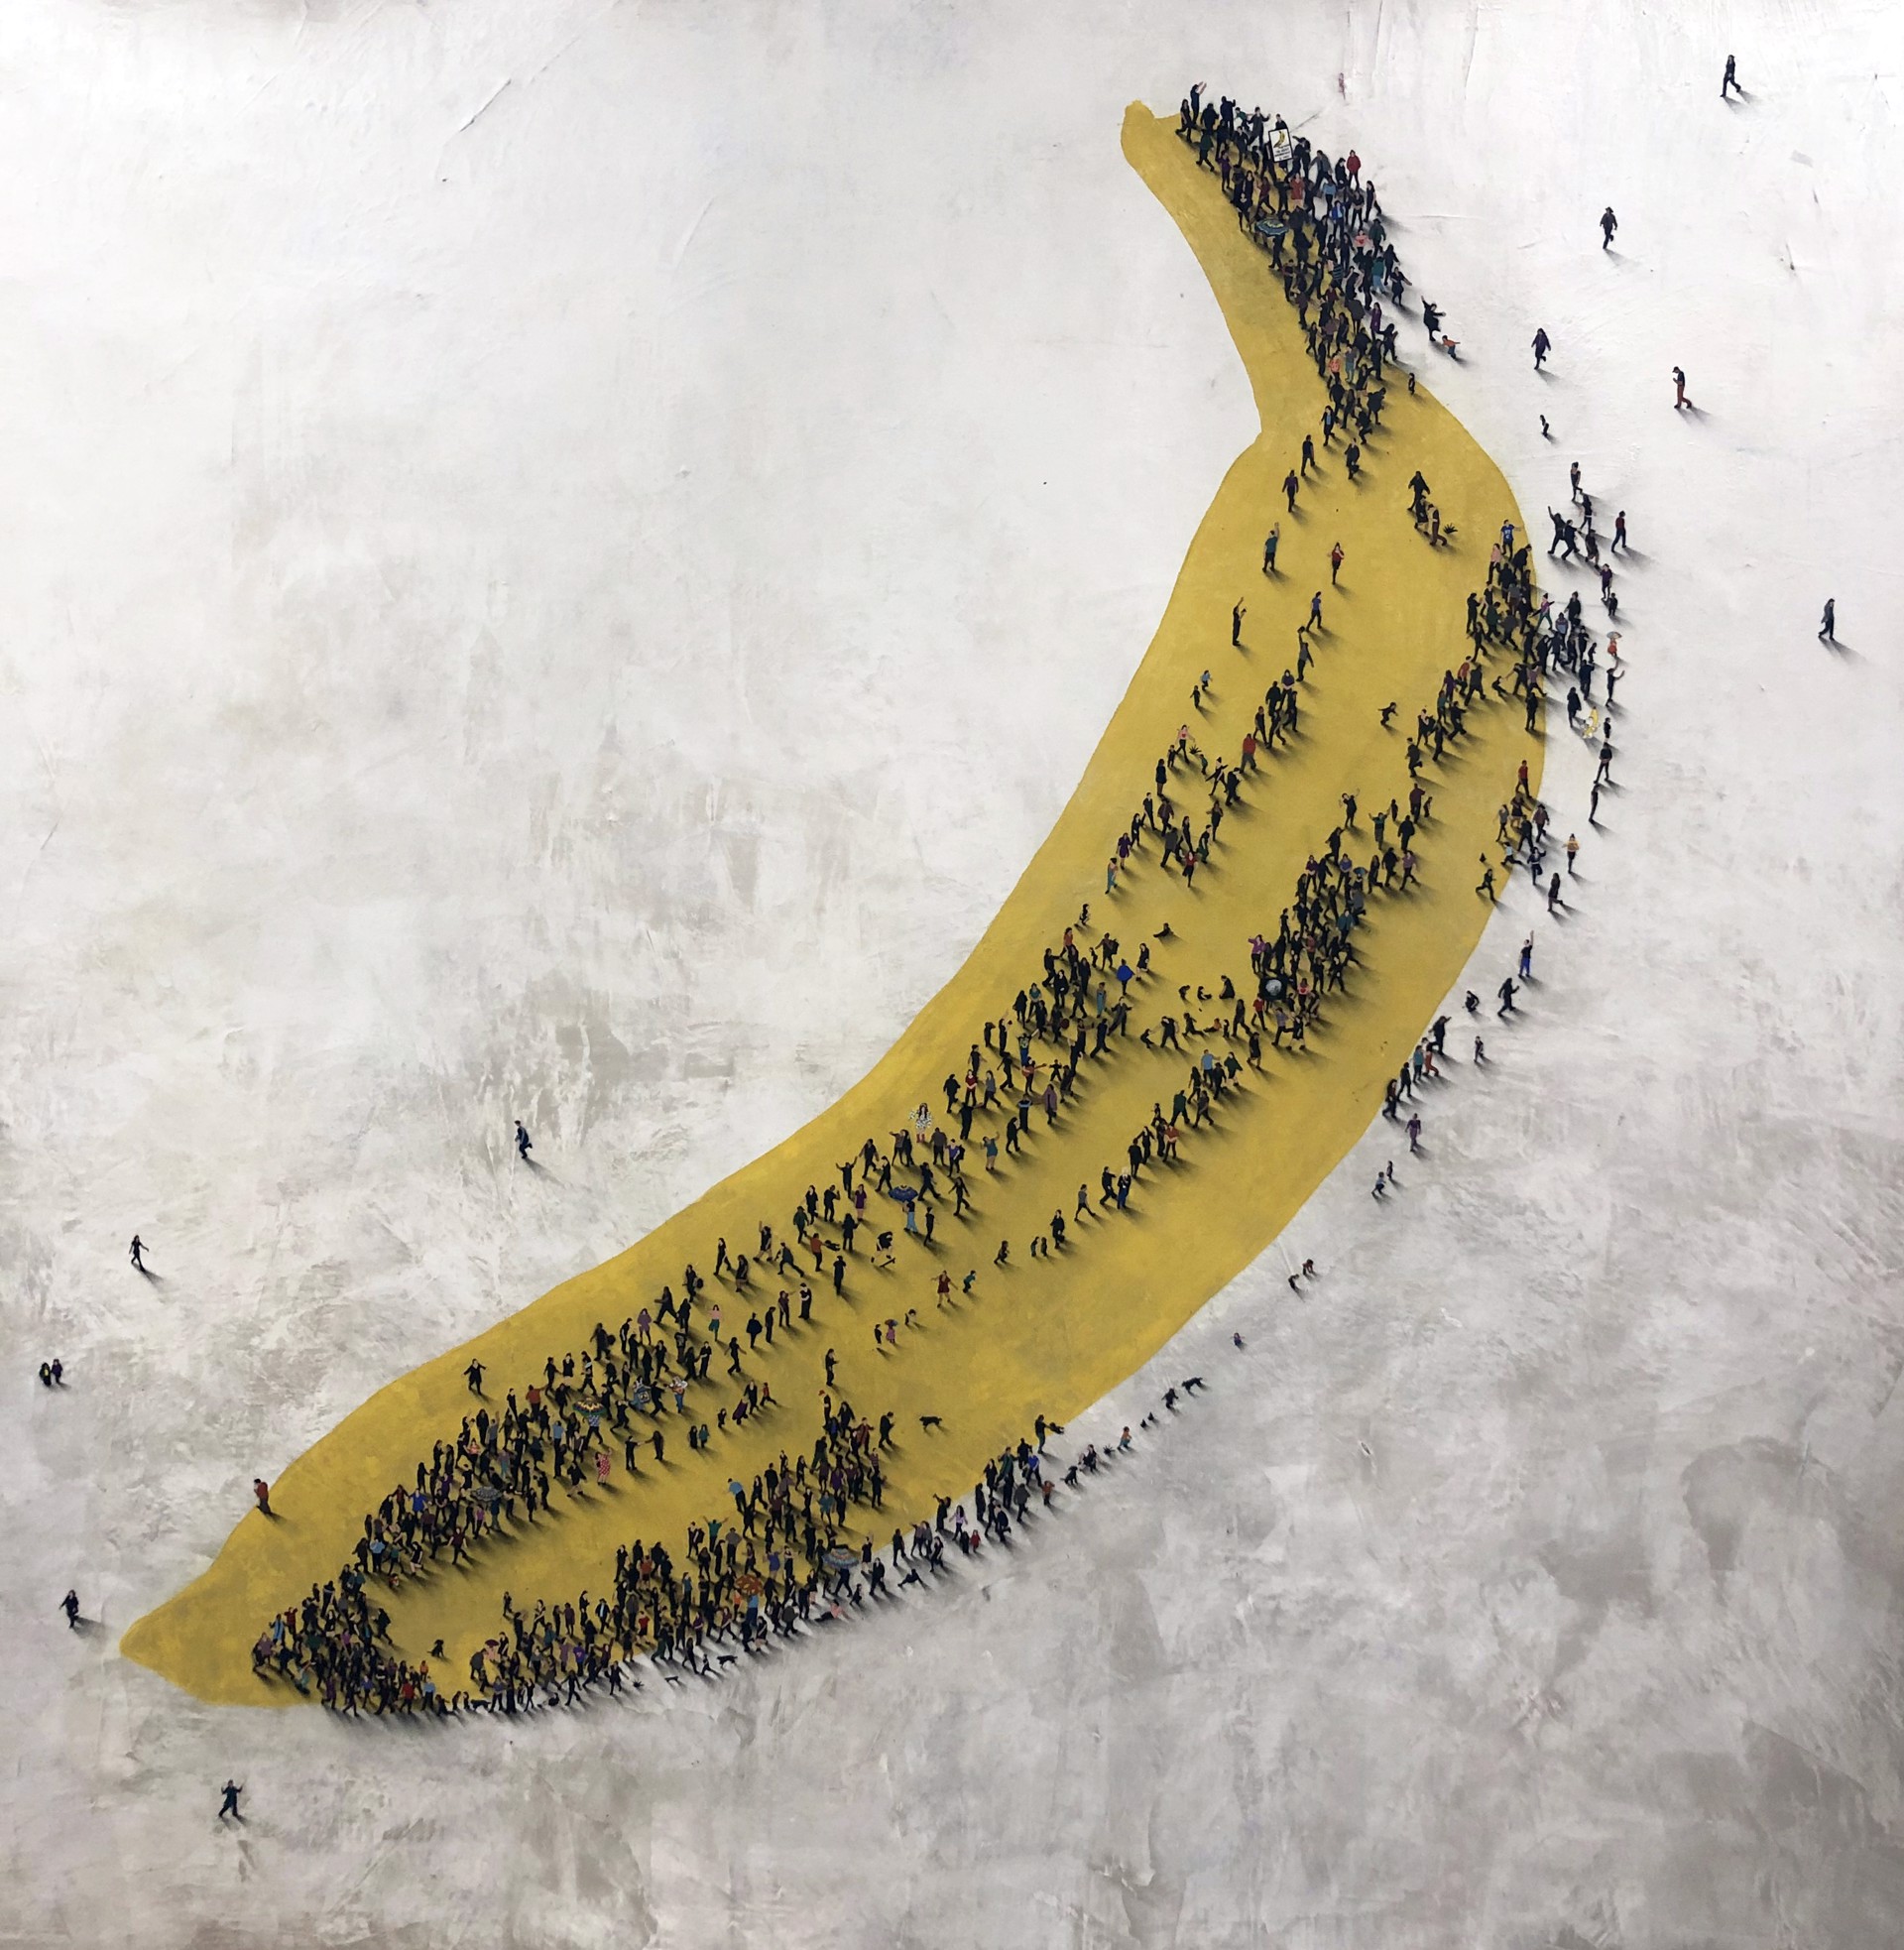 Velvet Underground by Craig Alan, Populus Homage